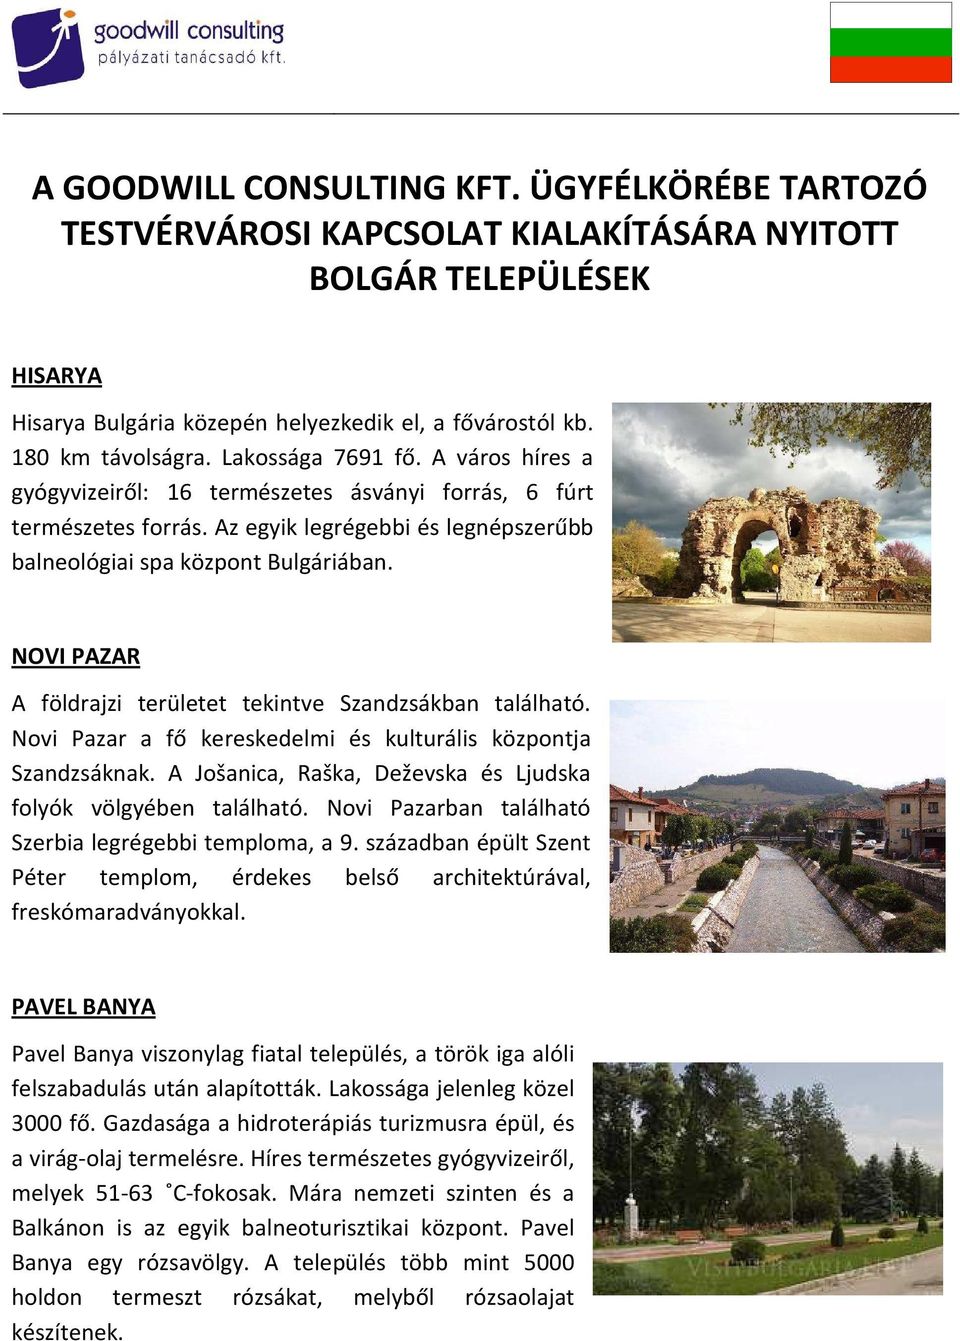 NOVI PAZAR A földrajzi területet tekintve Szandzsákban található. Novi Pazar a fő kereskedelmi és kulturális központja Szandzsáknak. A Jošanica, Raška, Deževska és Ljudska folyók völgyében található.